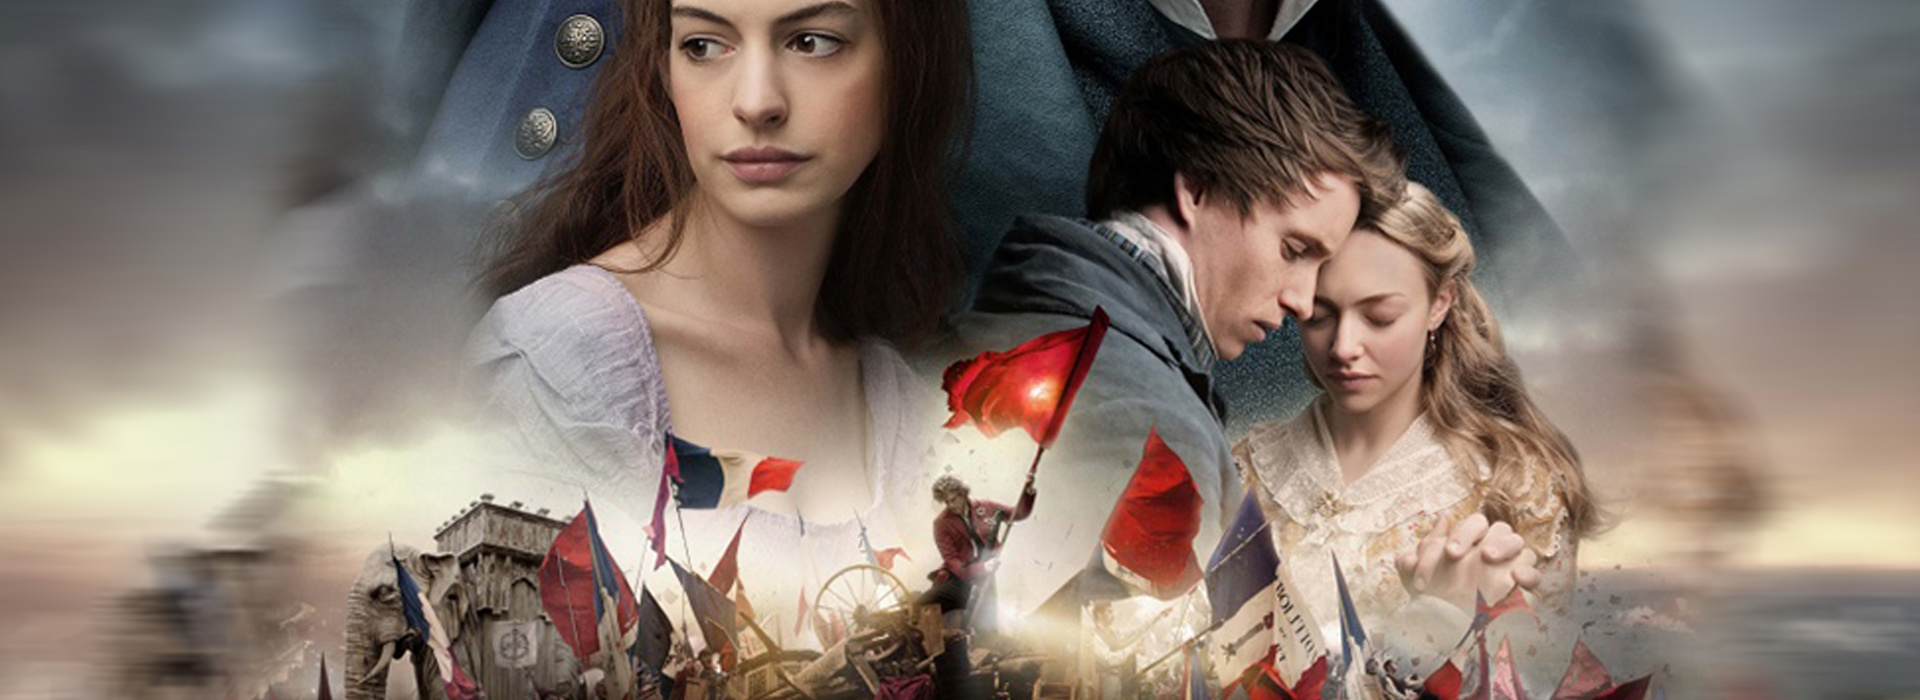 Movie poster Les Misérables